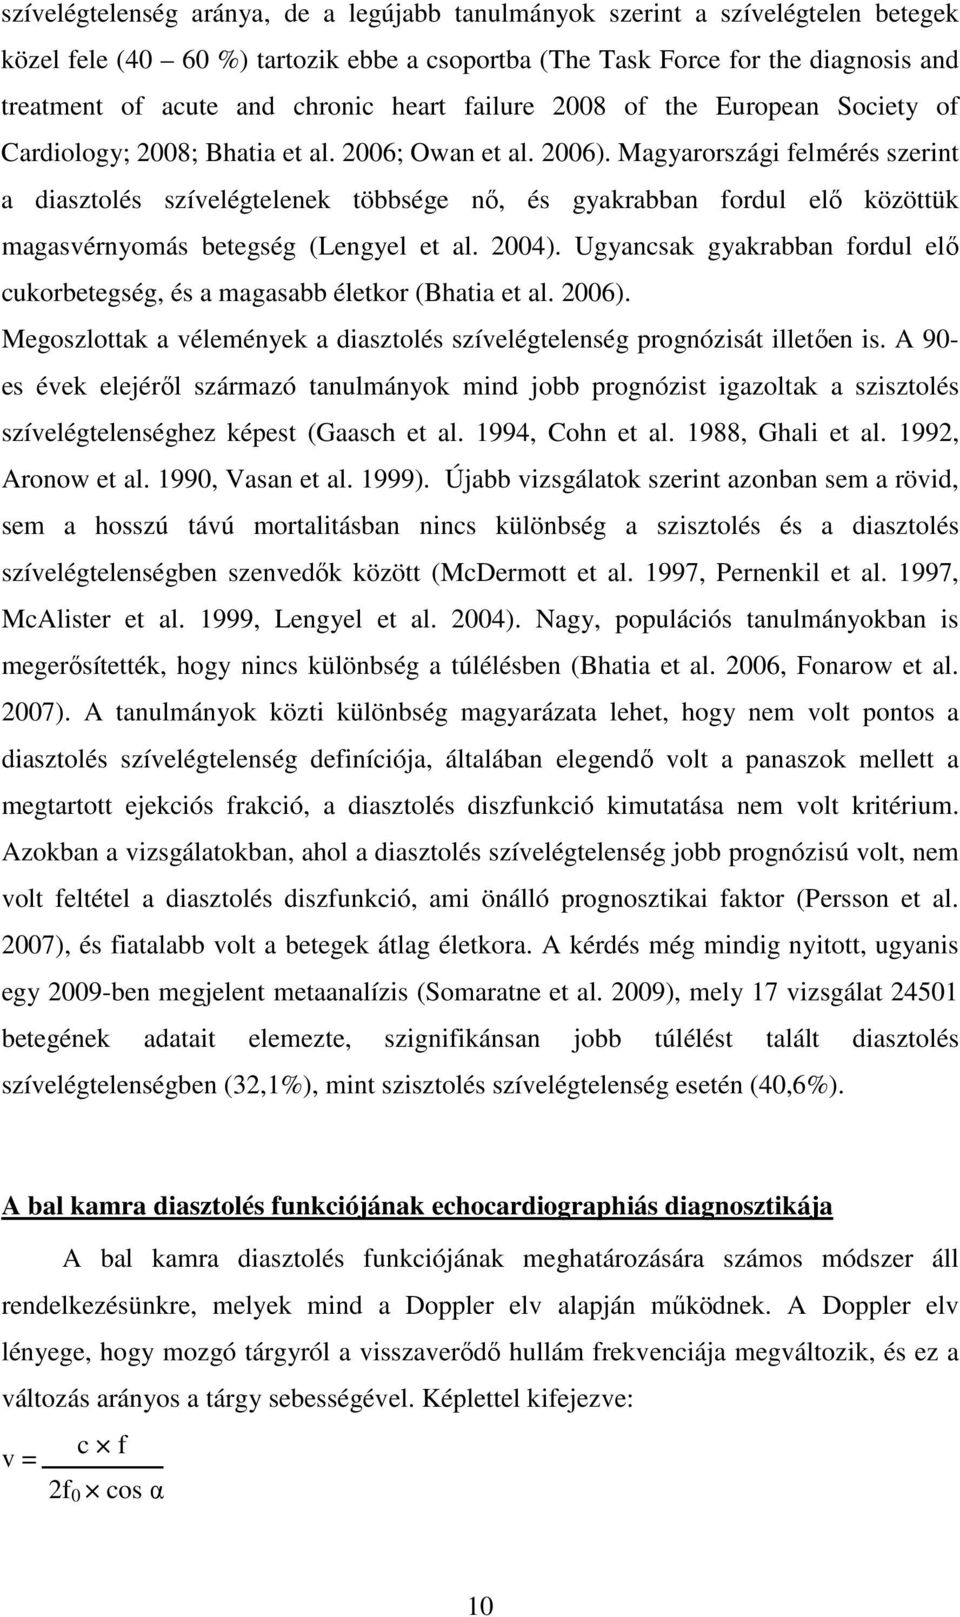 Magyarországi felmérés szerint a diasztolés szívelégtelenek többsége nő, és gyakrabban fordul elő közöttük magasvérnyomás betegség (Lengyel et al. 2004).